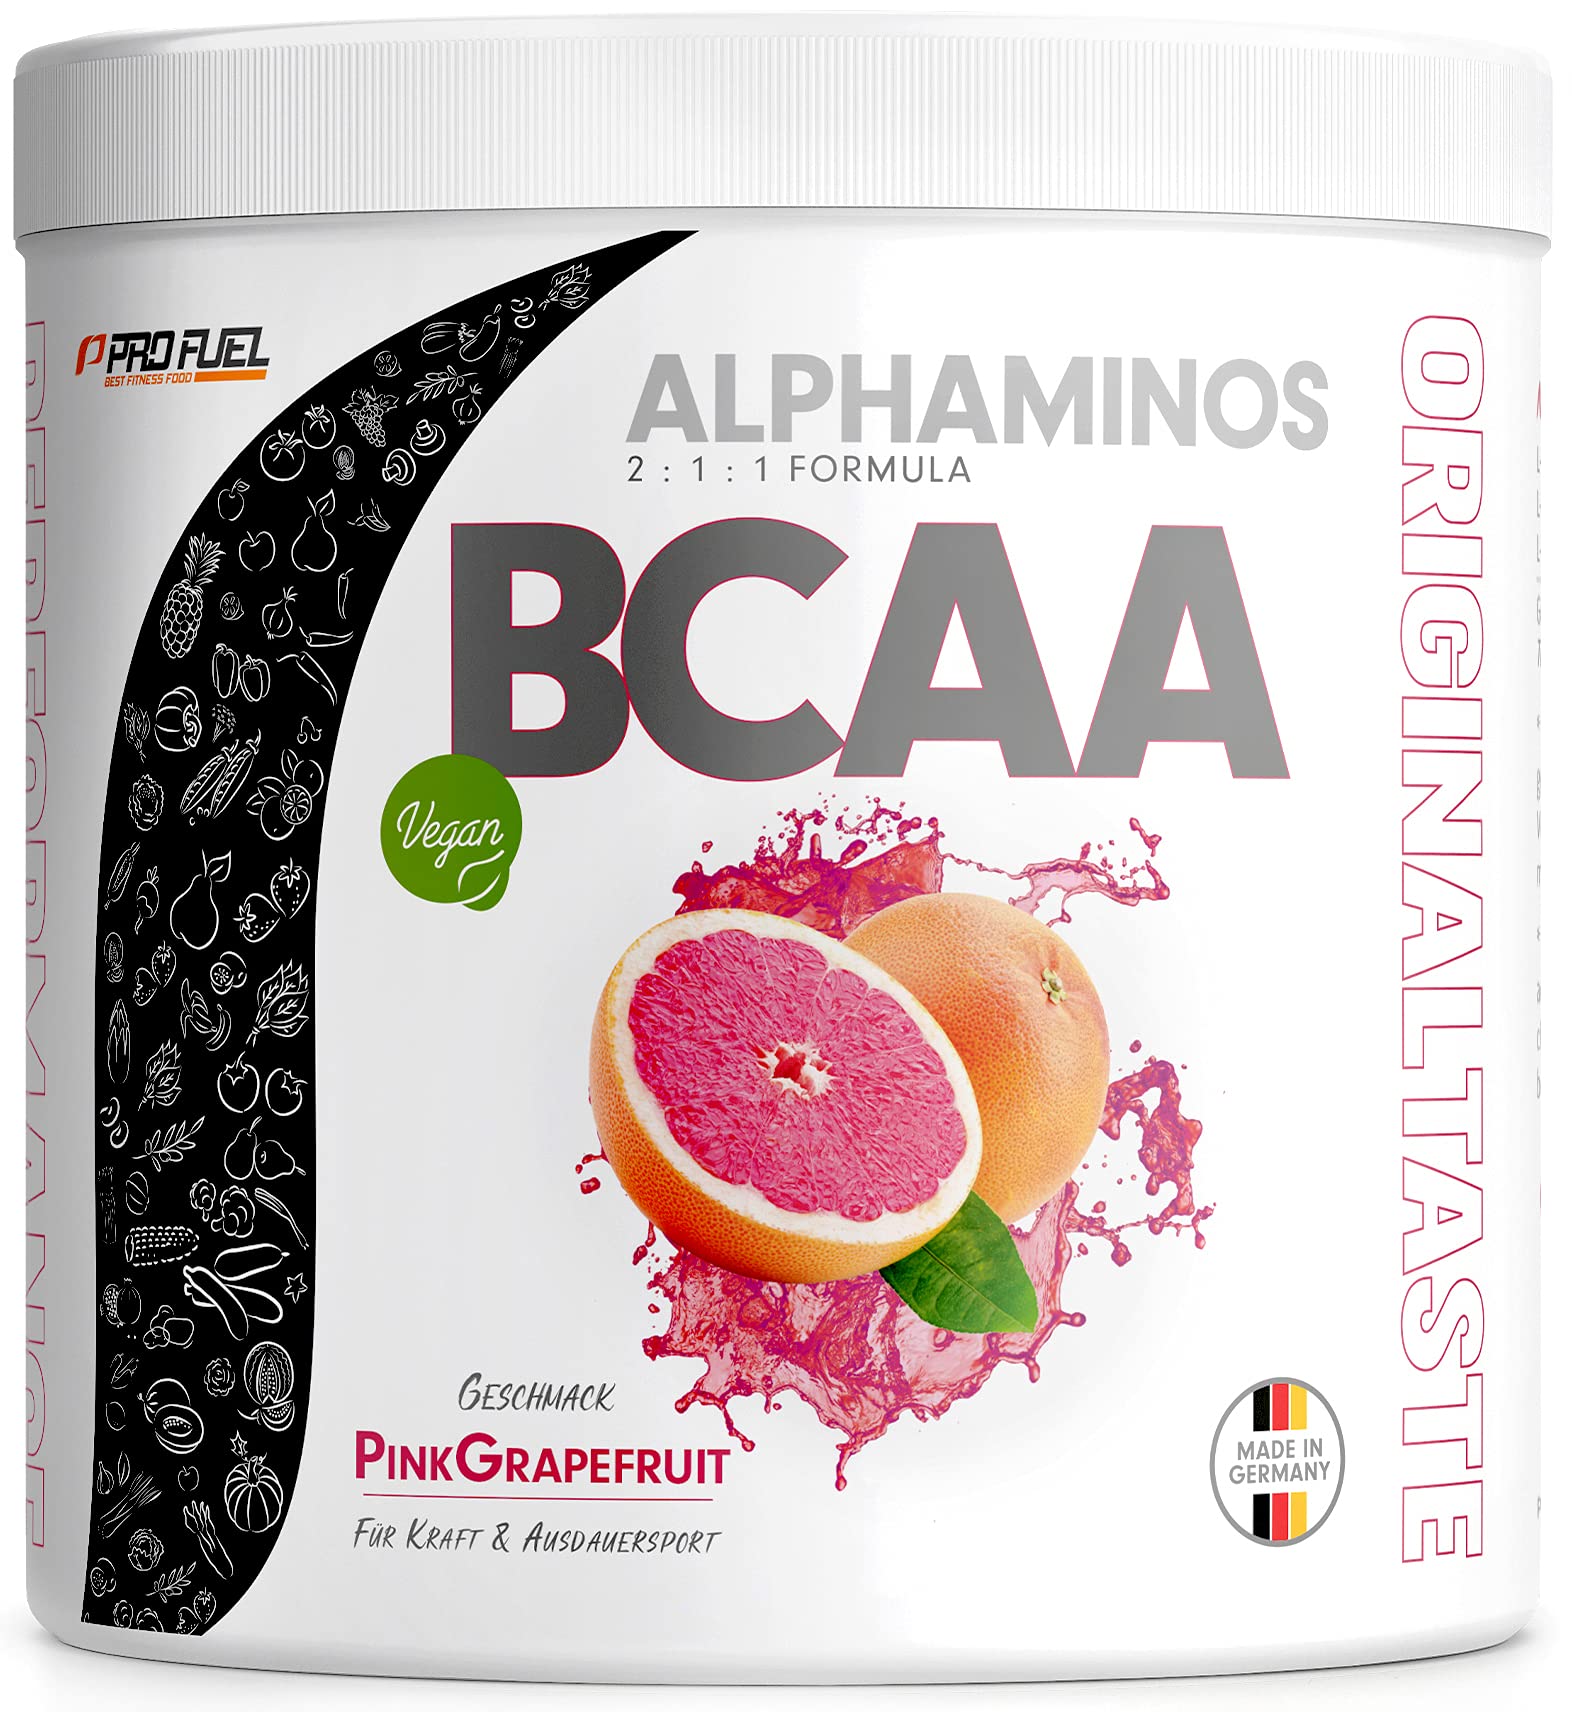 BCAA Pulver 300g Pink-Grapefruit, TESTSIEGER Alphaminos BCAA 2:1:1 Drink, unfassbar leckerer Geschmack, Essentielle Aminosäuren Leucin, Isoleucin & Valin, 100% vegan - Top Löslichkeit - Laborgeprüft